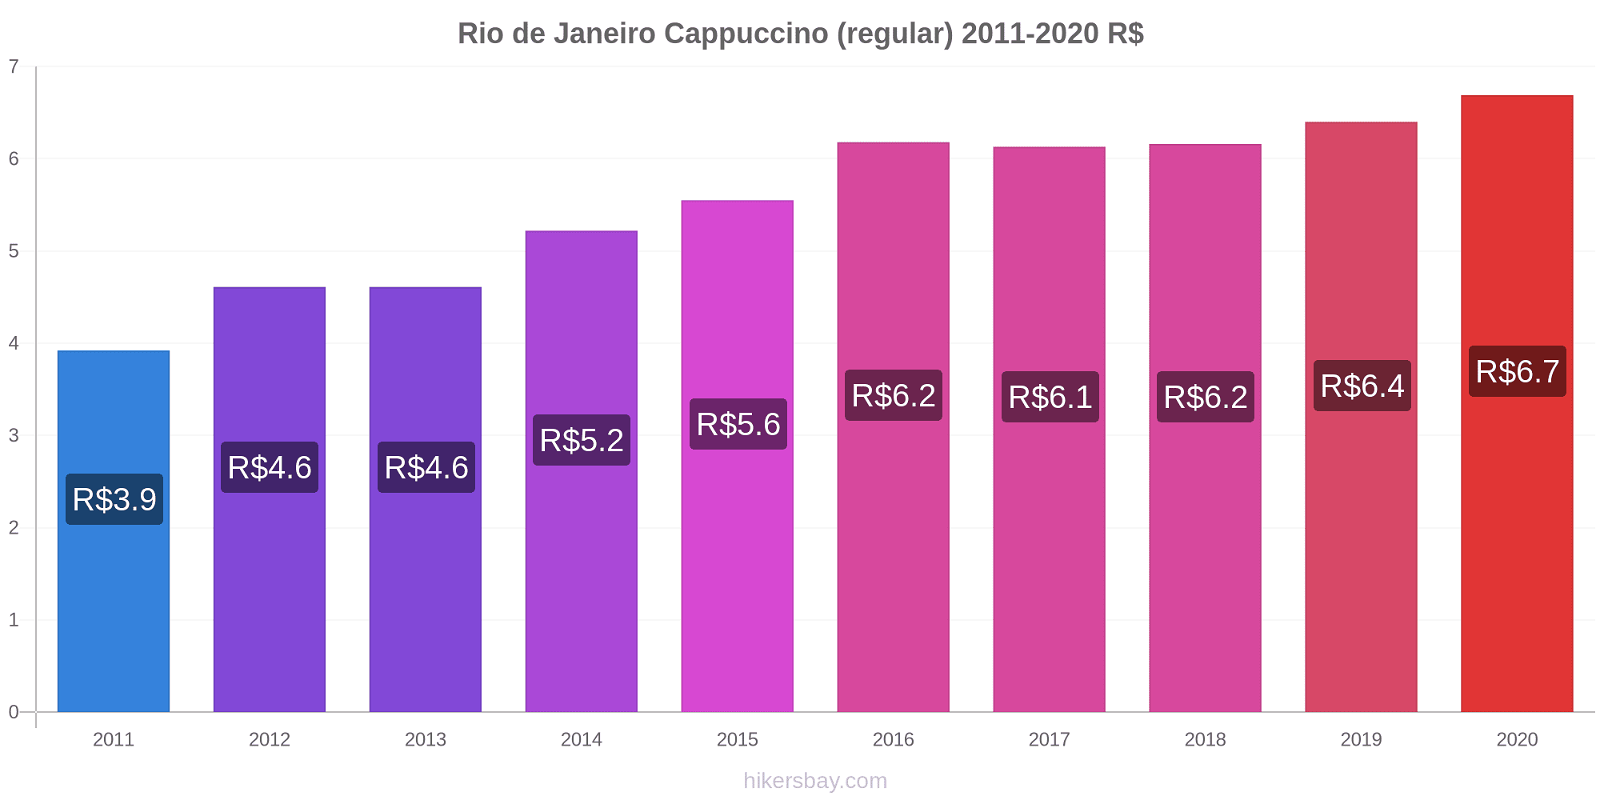 Rio de Janeiro variação de preço Capuccino (regular) hikersbay.com